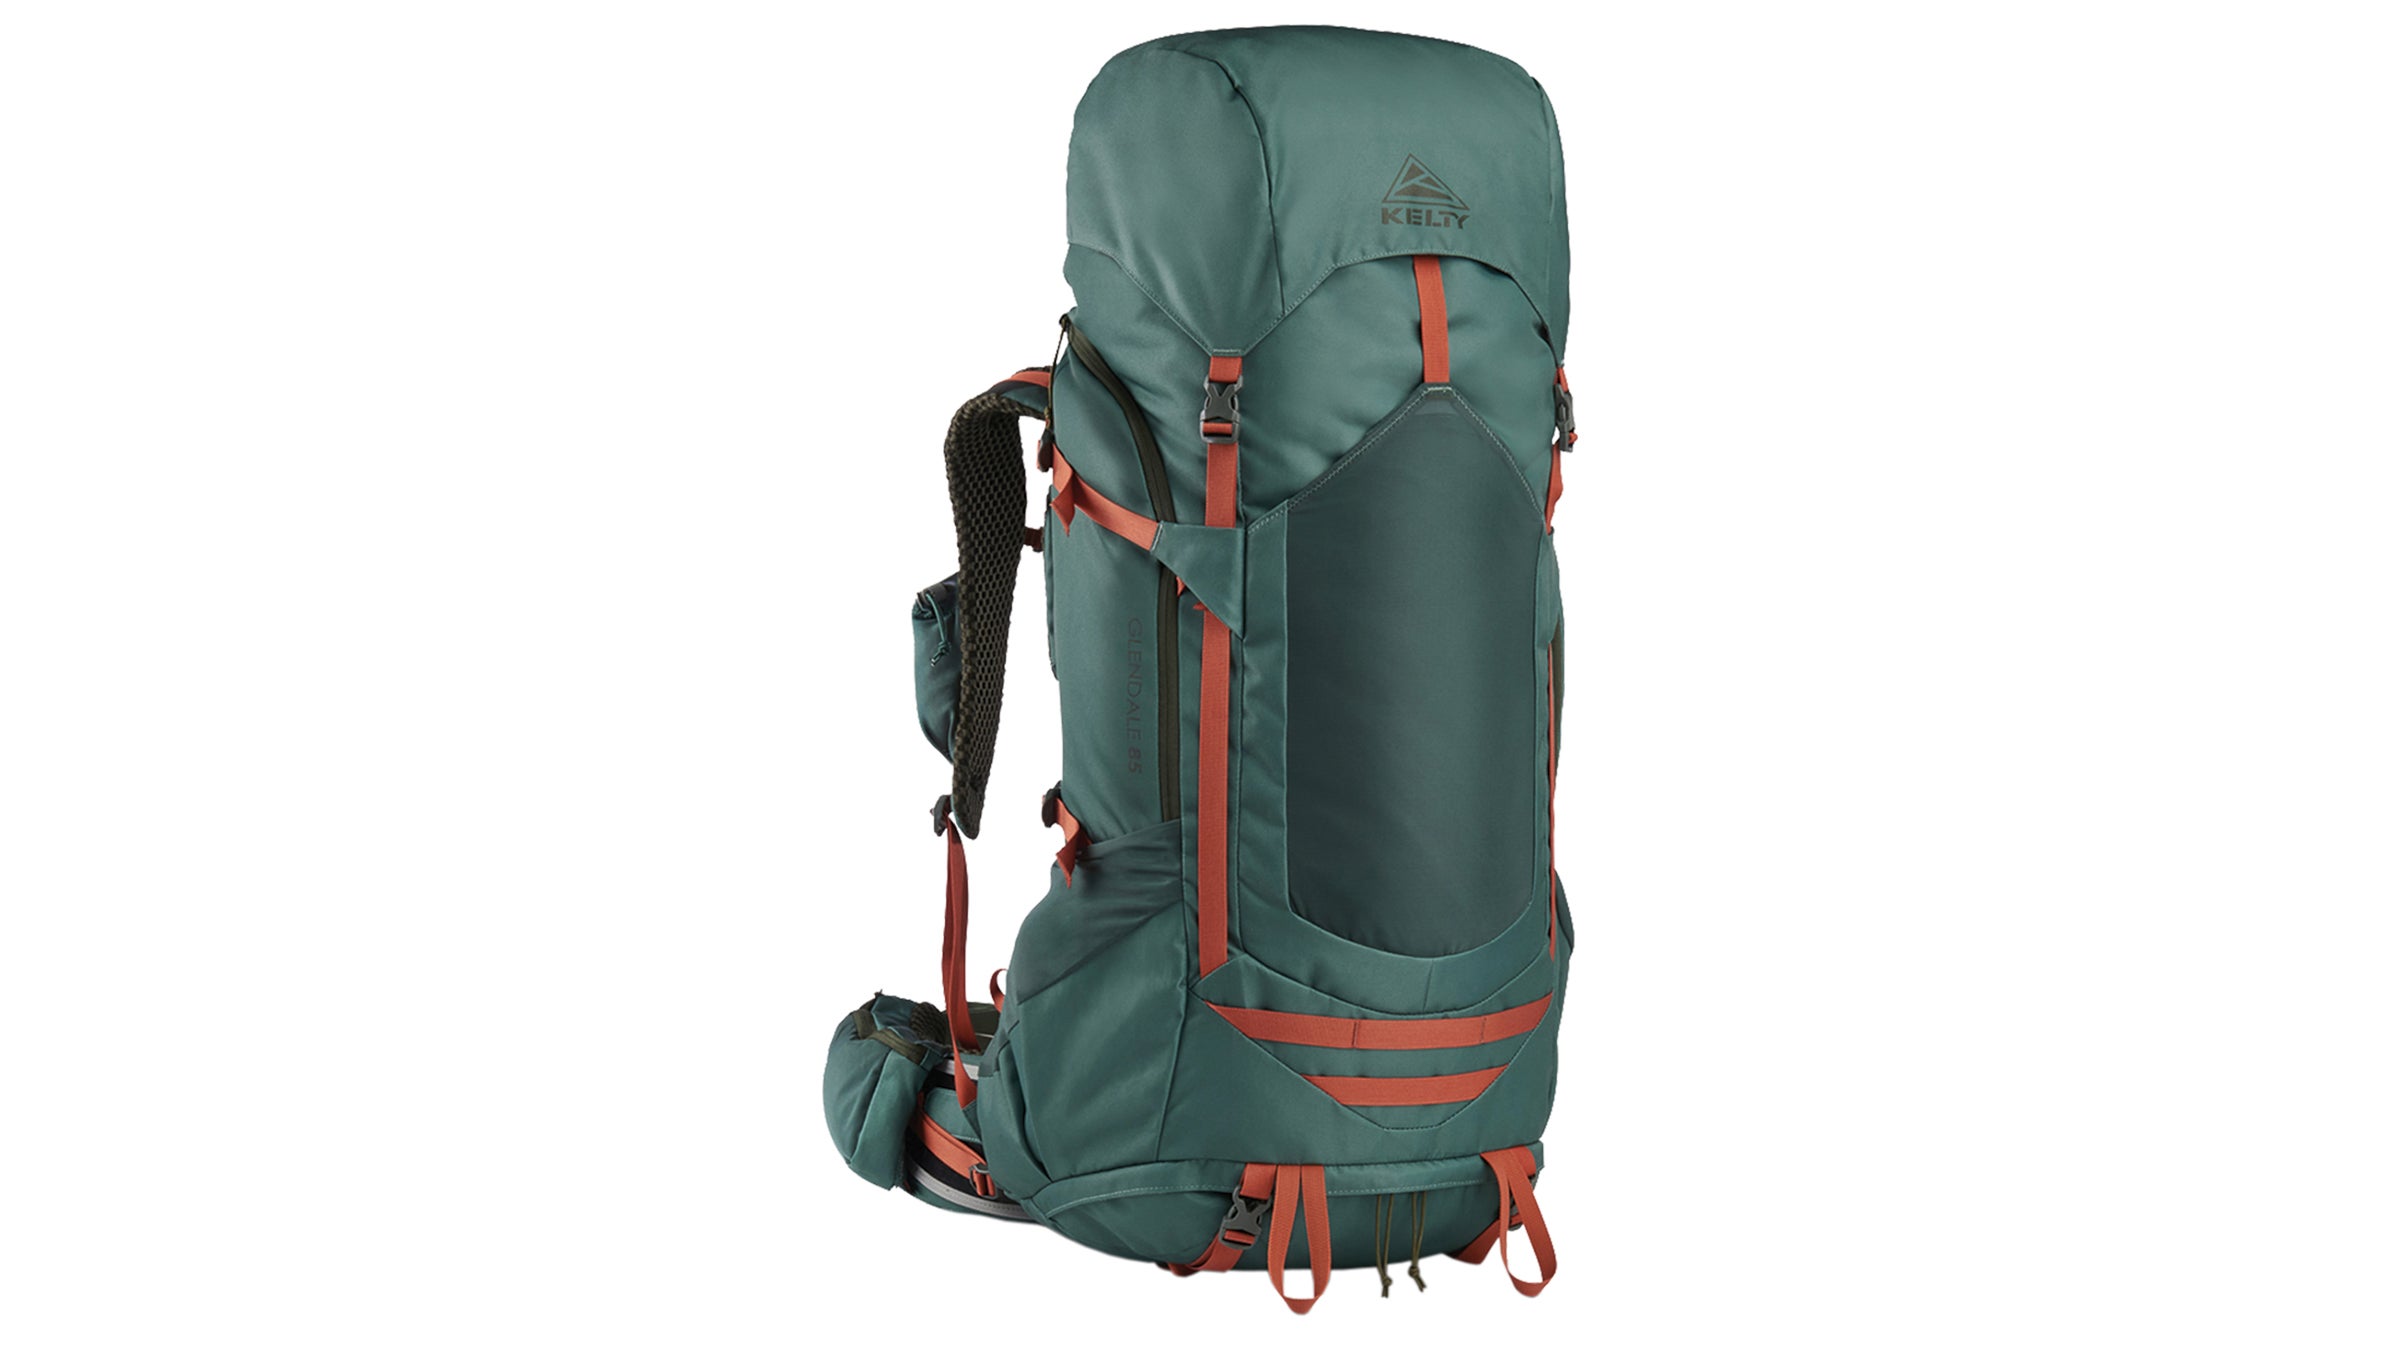 Large 80L Premium Waterproof Jumbo Trekking bag Rucksack Hiking Travel Bags,  Extra Spacious Travel, Tour, &